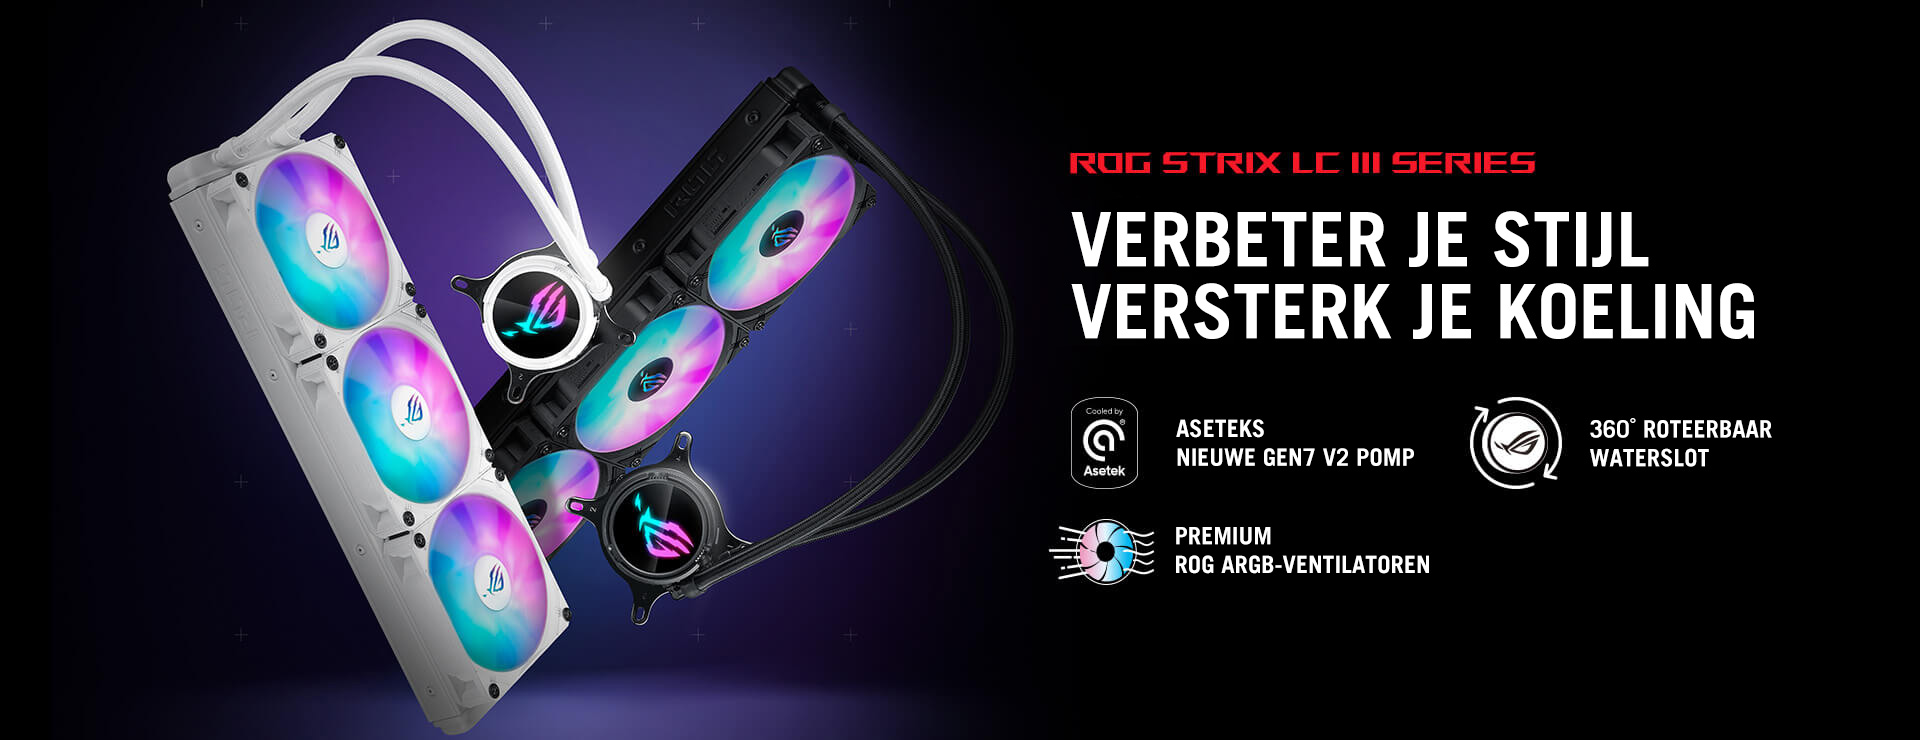 ROG Strix LC III-serie. VERBETER JE STIJL, VERSTERK JE KOELING. Met Aseteks nieuwe Gen7 V2-pomp, 360° draaibaar waterblok en Premium ROG ARGB-ventilatoren.